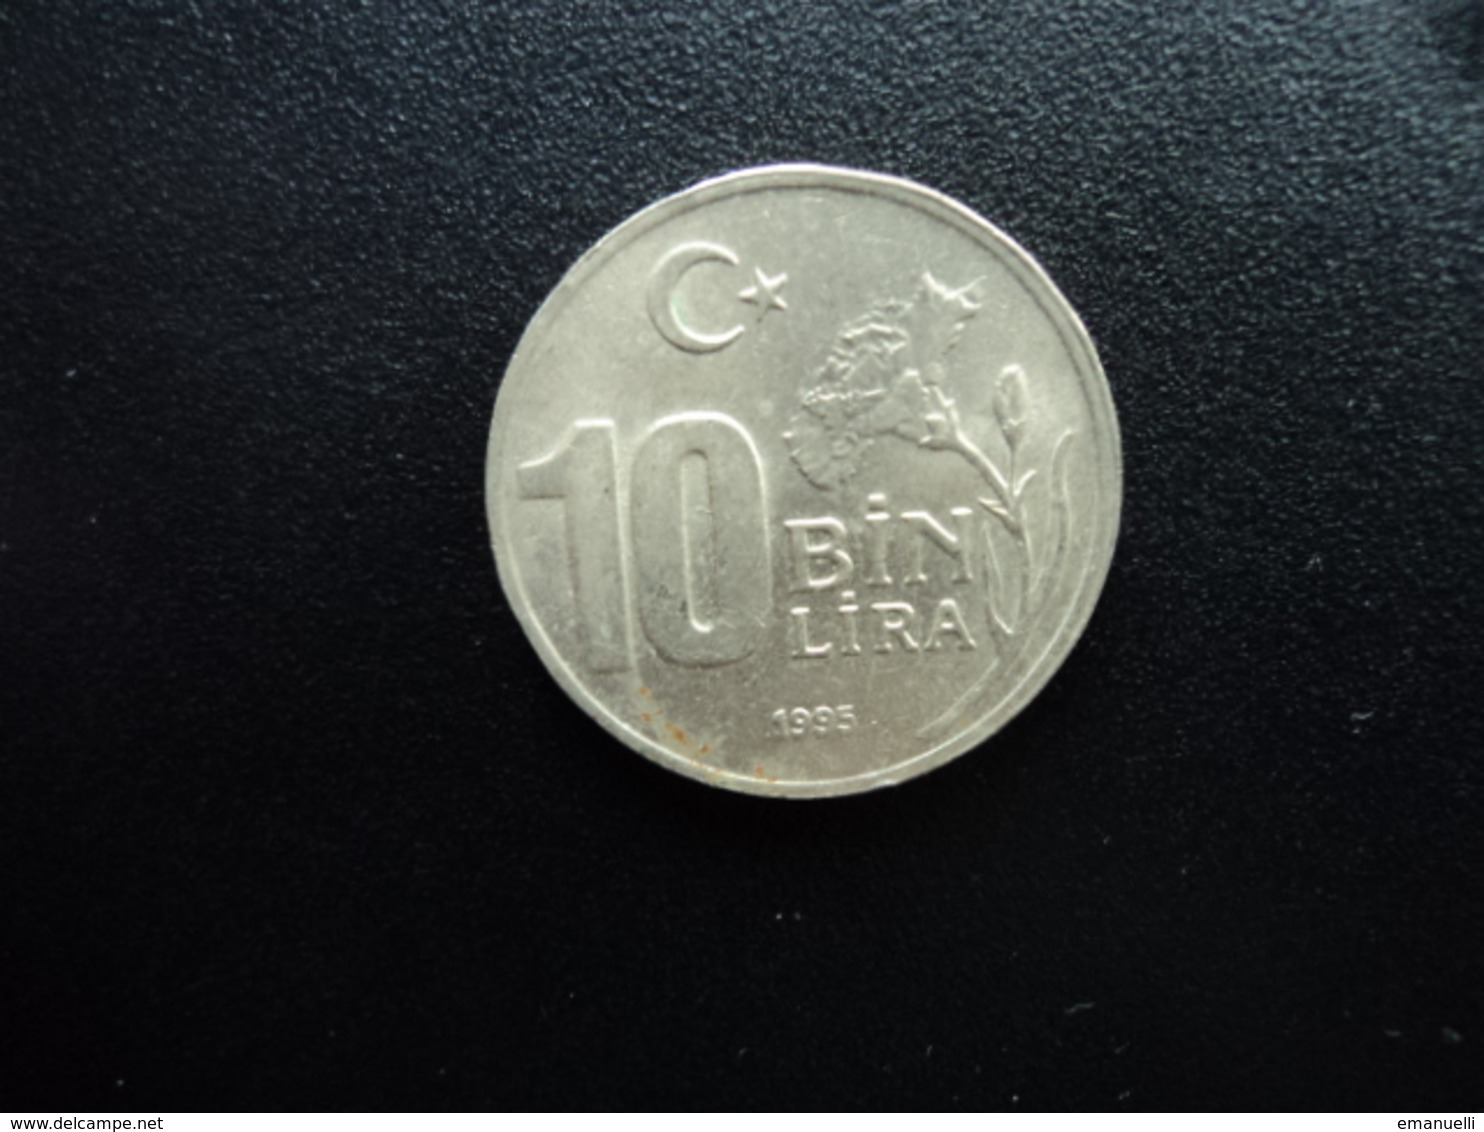 TURQUIE : 10 BIN (000) LIRA   1995  Trancha A *   KM 1027.1   SUP - Turquie